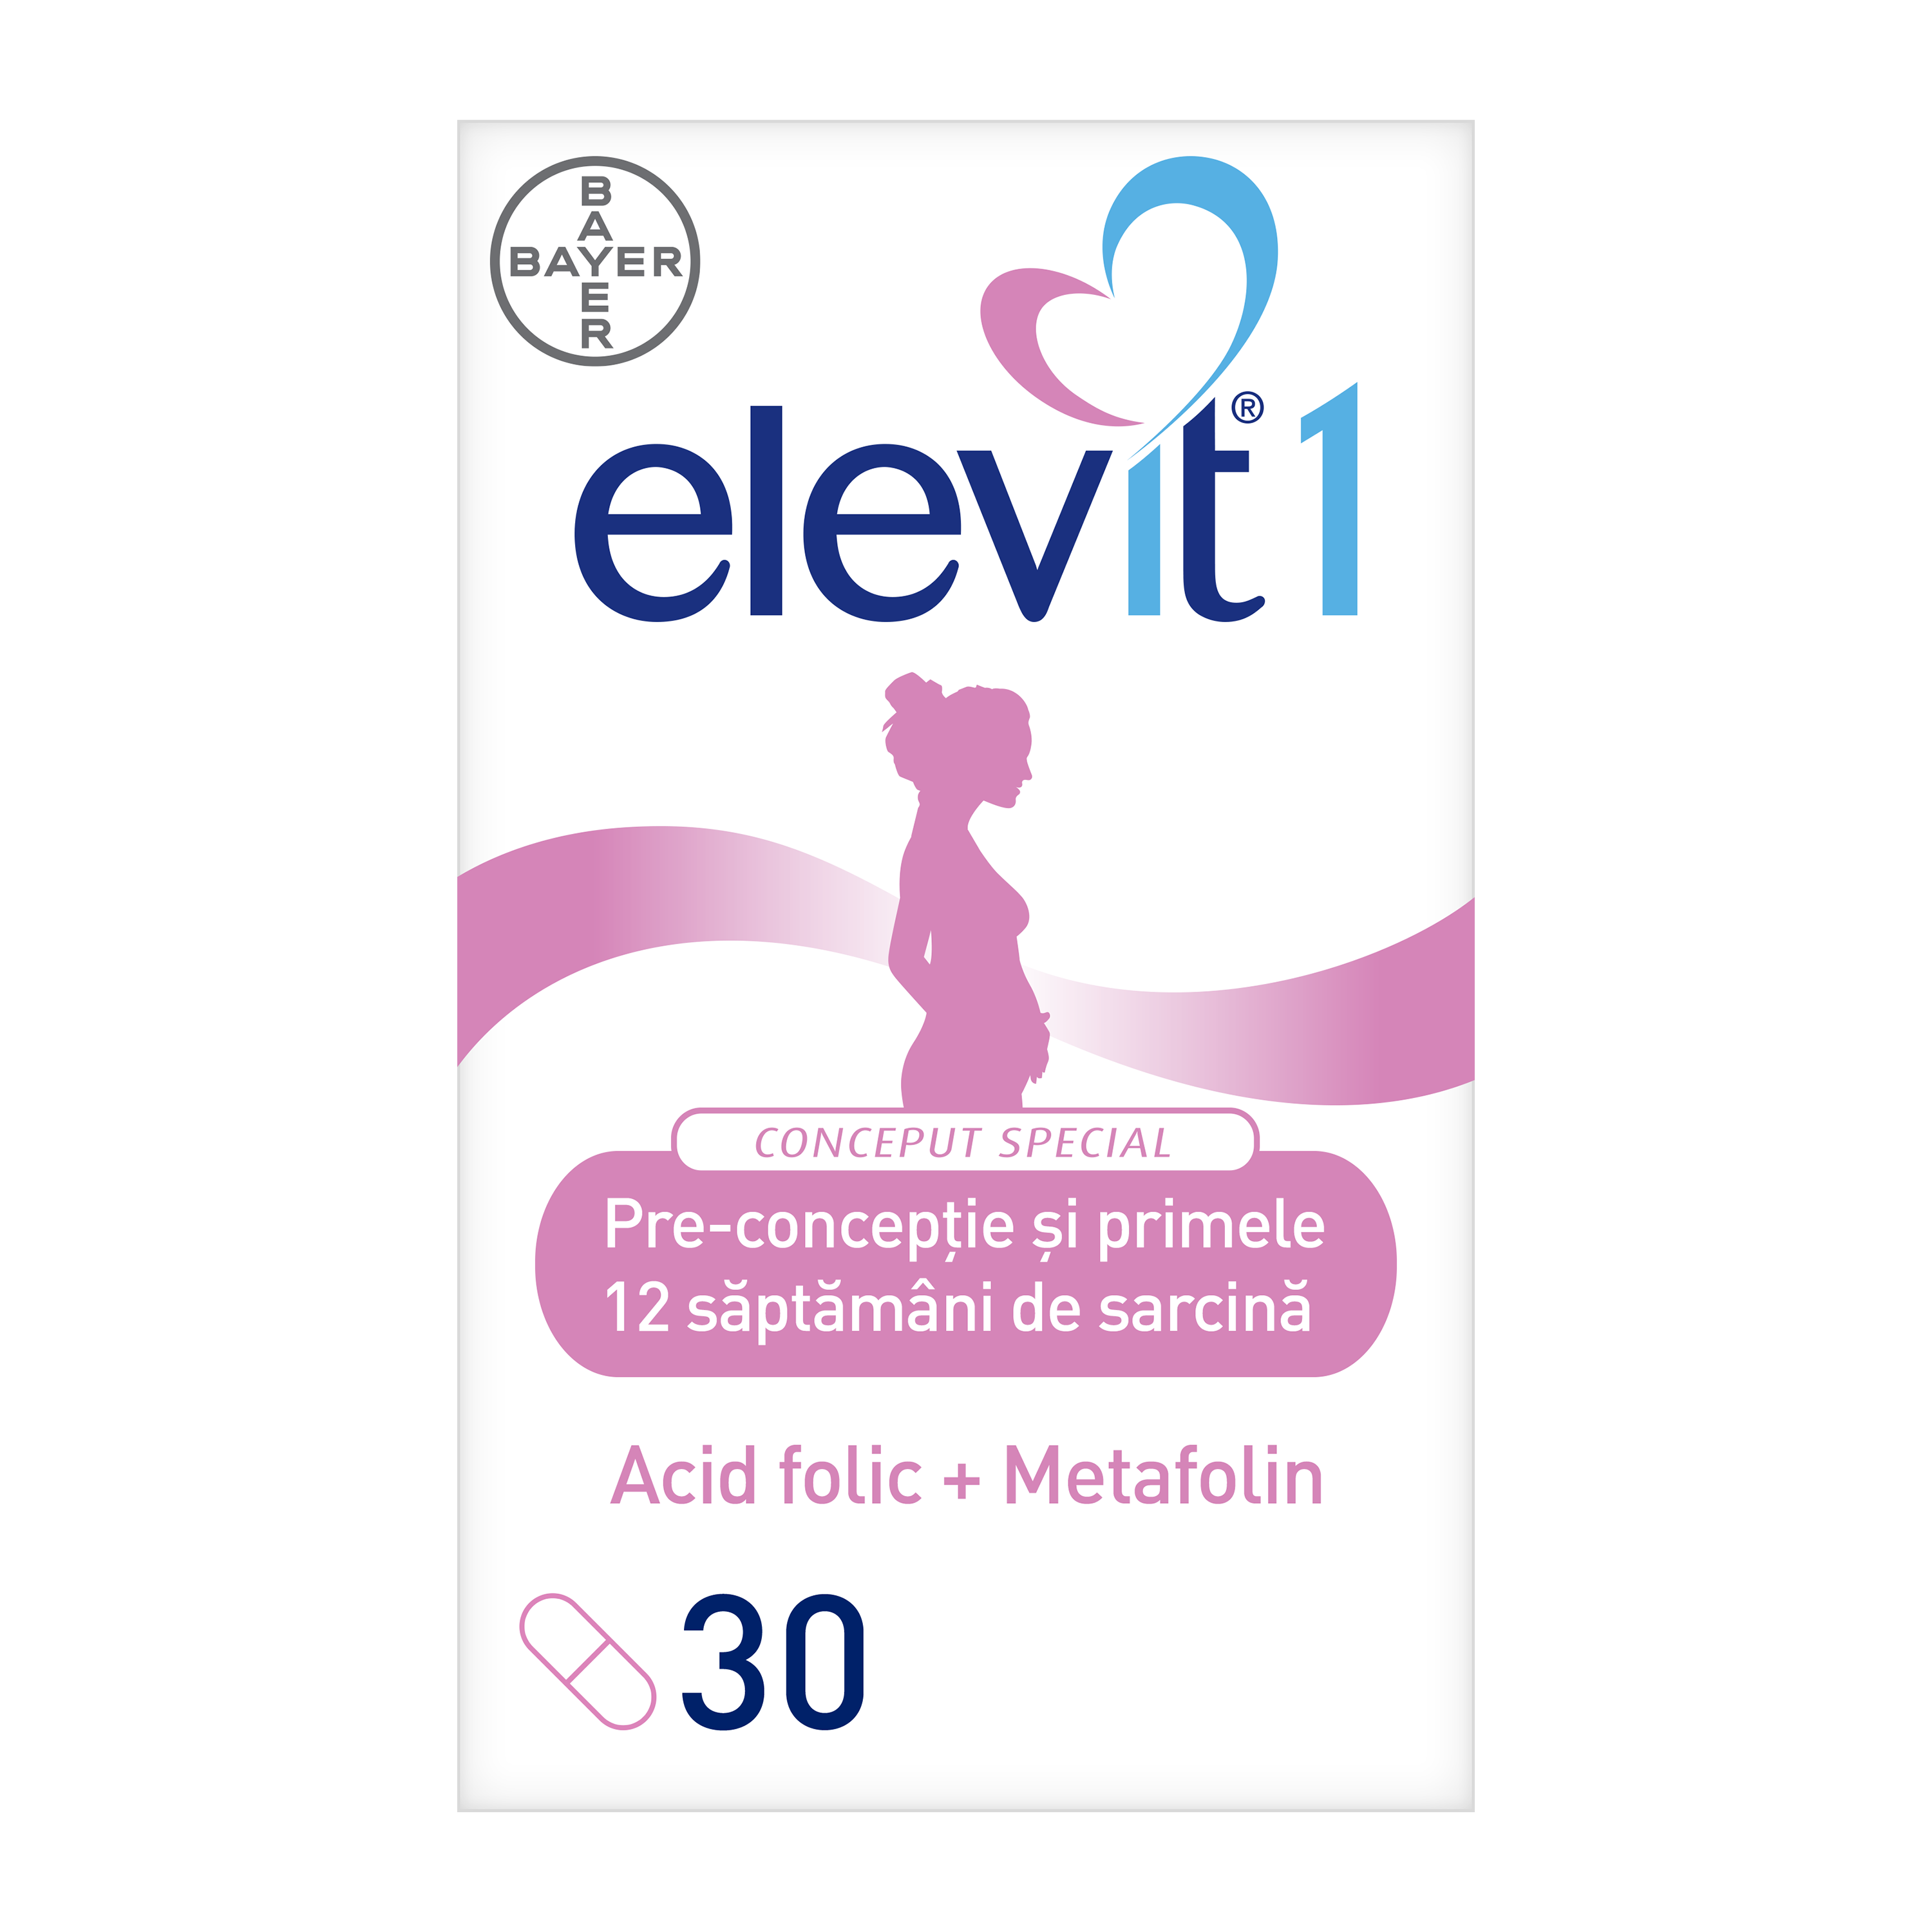 ELEVIT 1 PRE-CONCEPTIE SI SARCINA, 30 CPR, BAYER